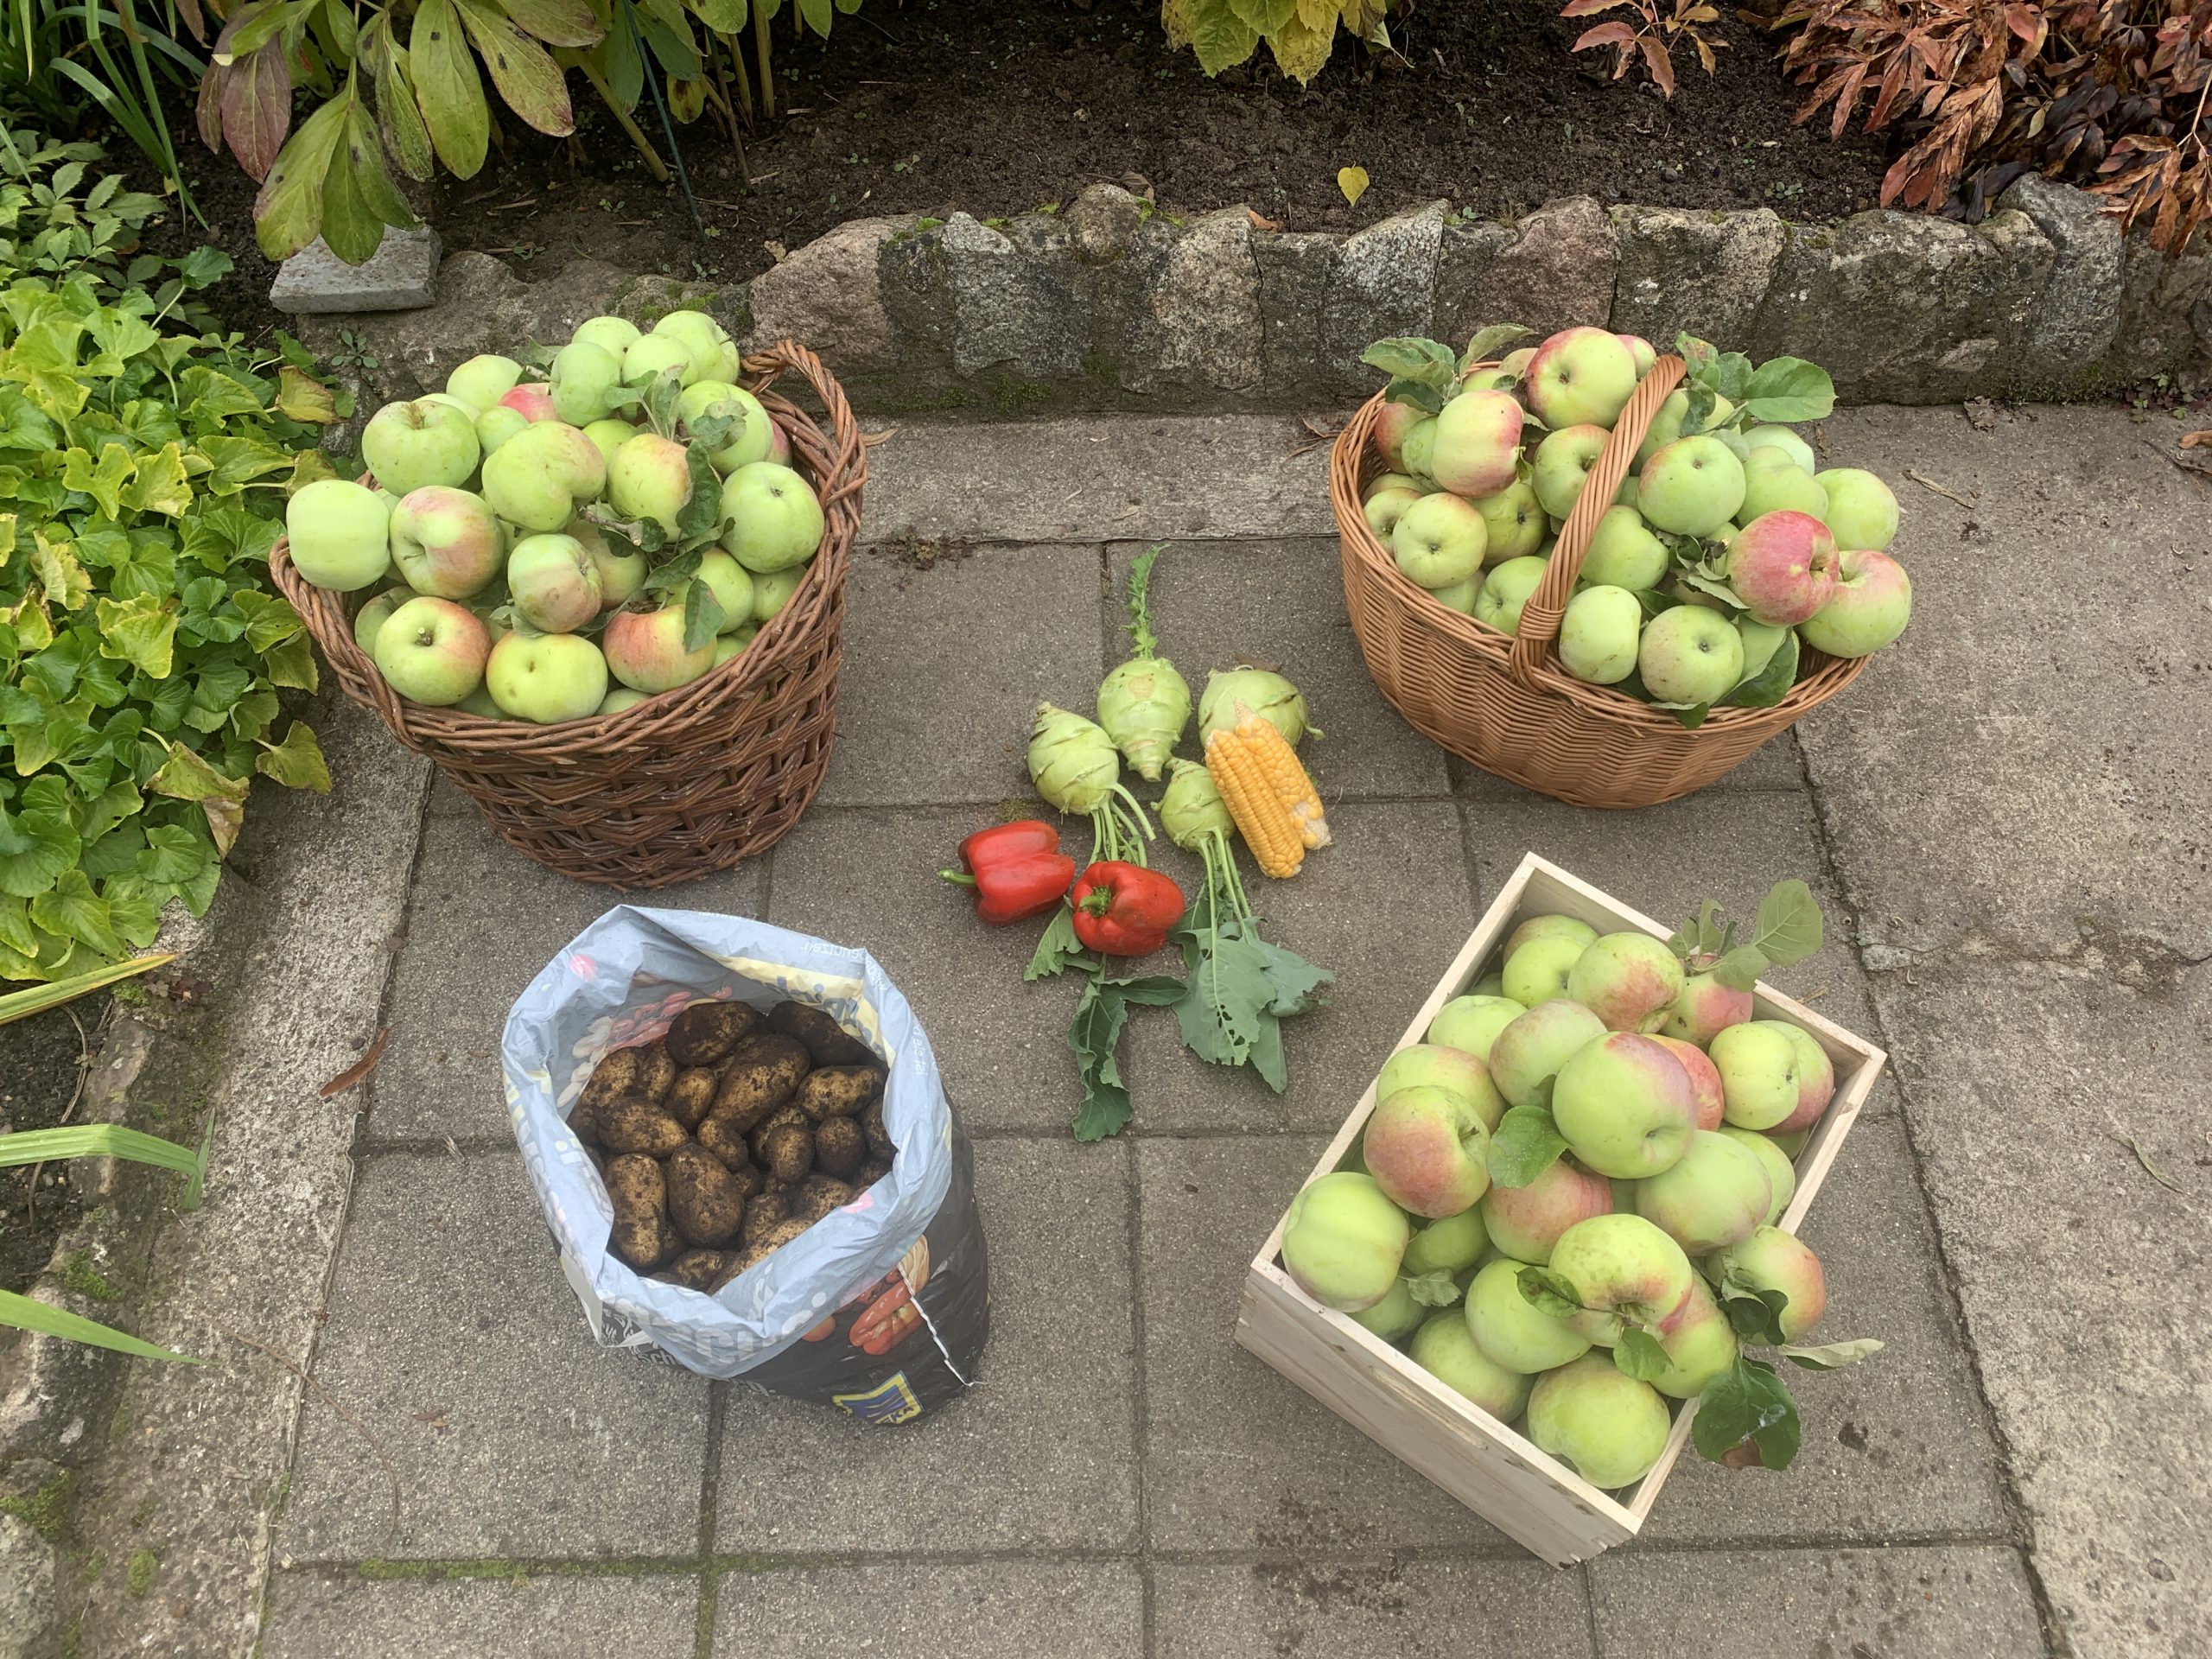 Äpfel, Paprika, Mais, Kohlrabi und Kartoffeln - all das wurde an die Schwester des Autors verschenkt